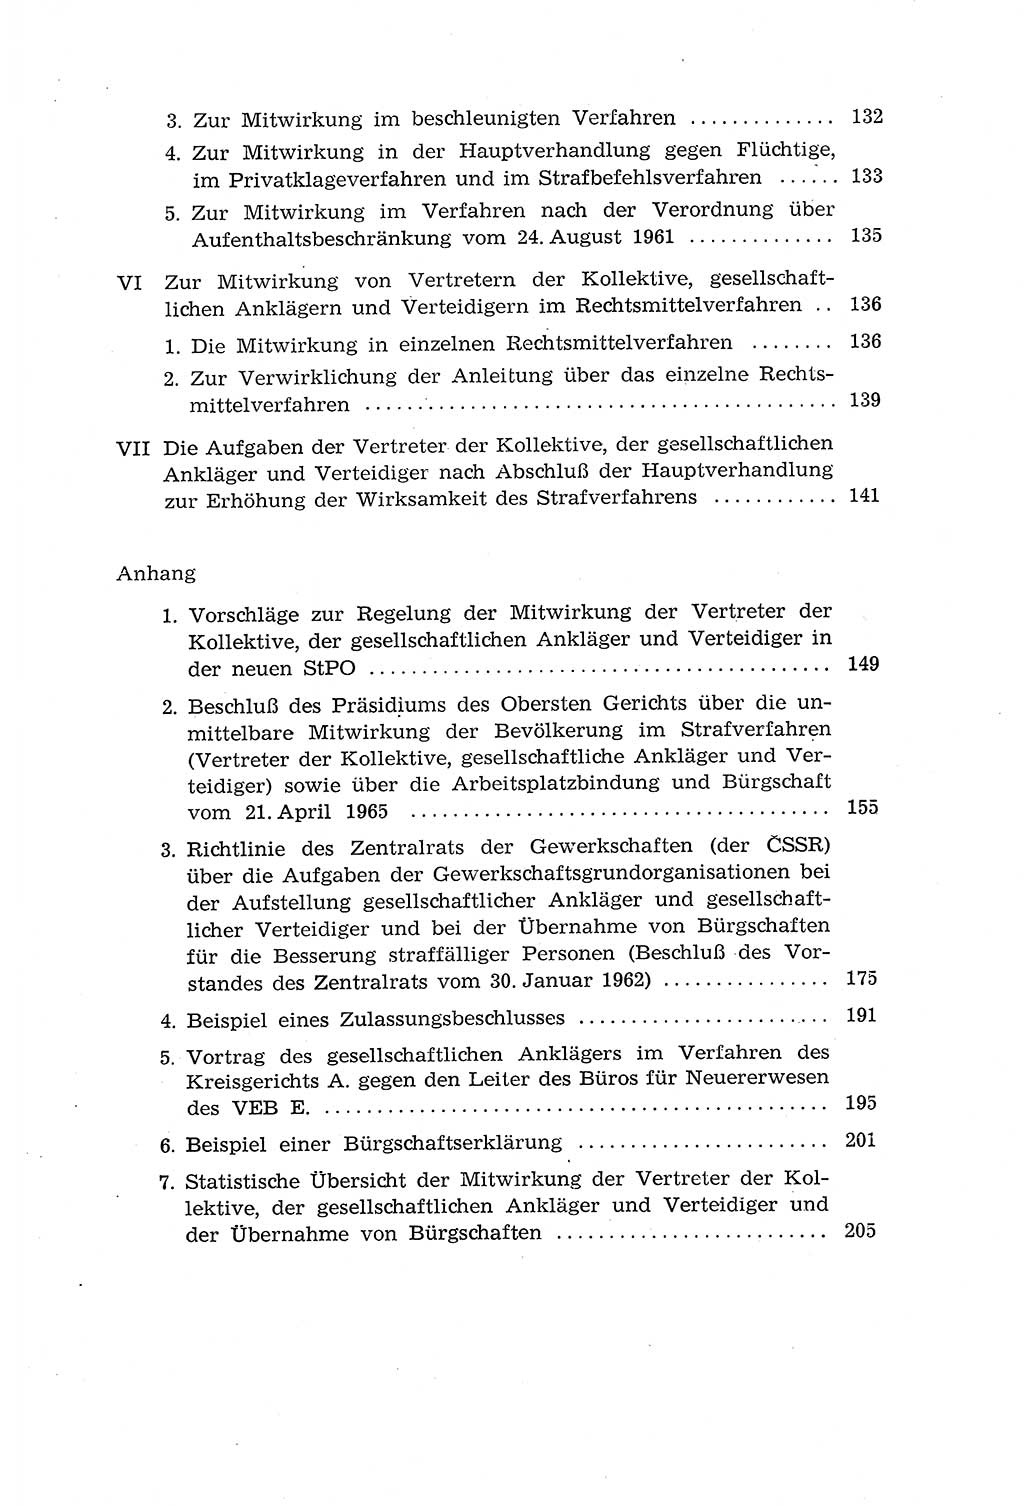 Die Mitwirkung der Werktätigen am Strafverfahren [Deutsche Demokratische Republik (DDR)] 1966, Seite 7 (Mitw. Str.-Verf. DDR 1966, S. 7)